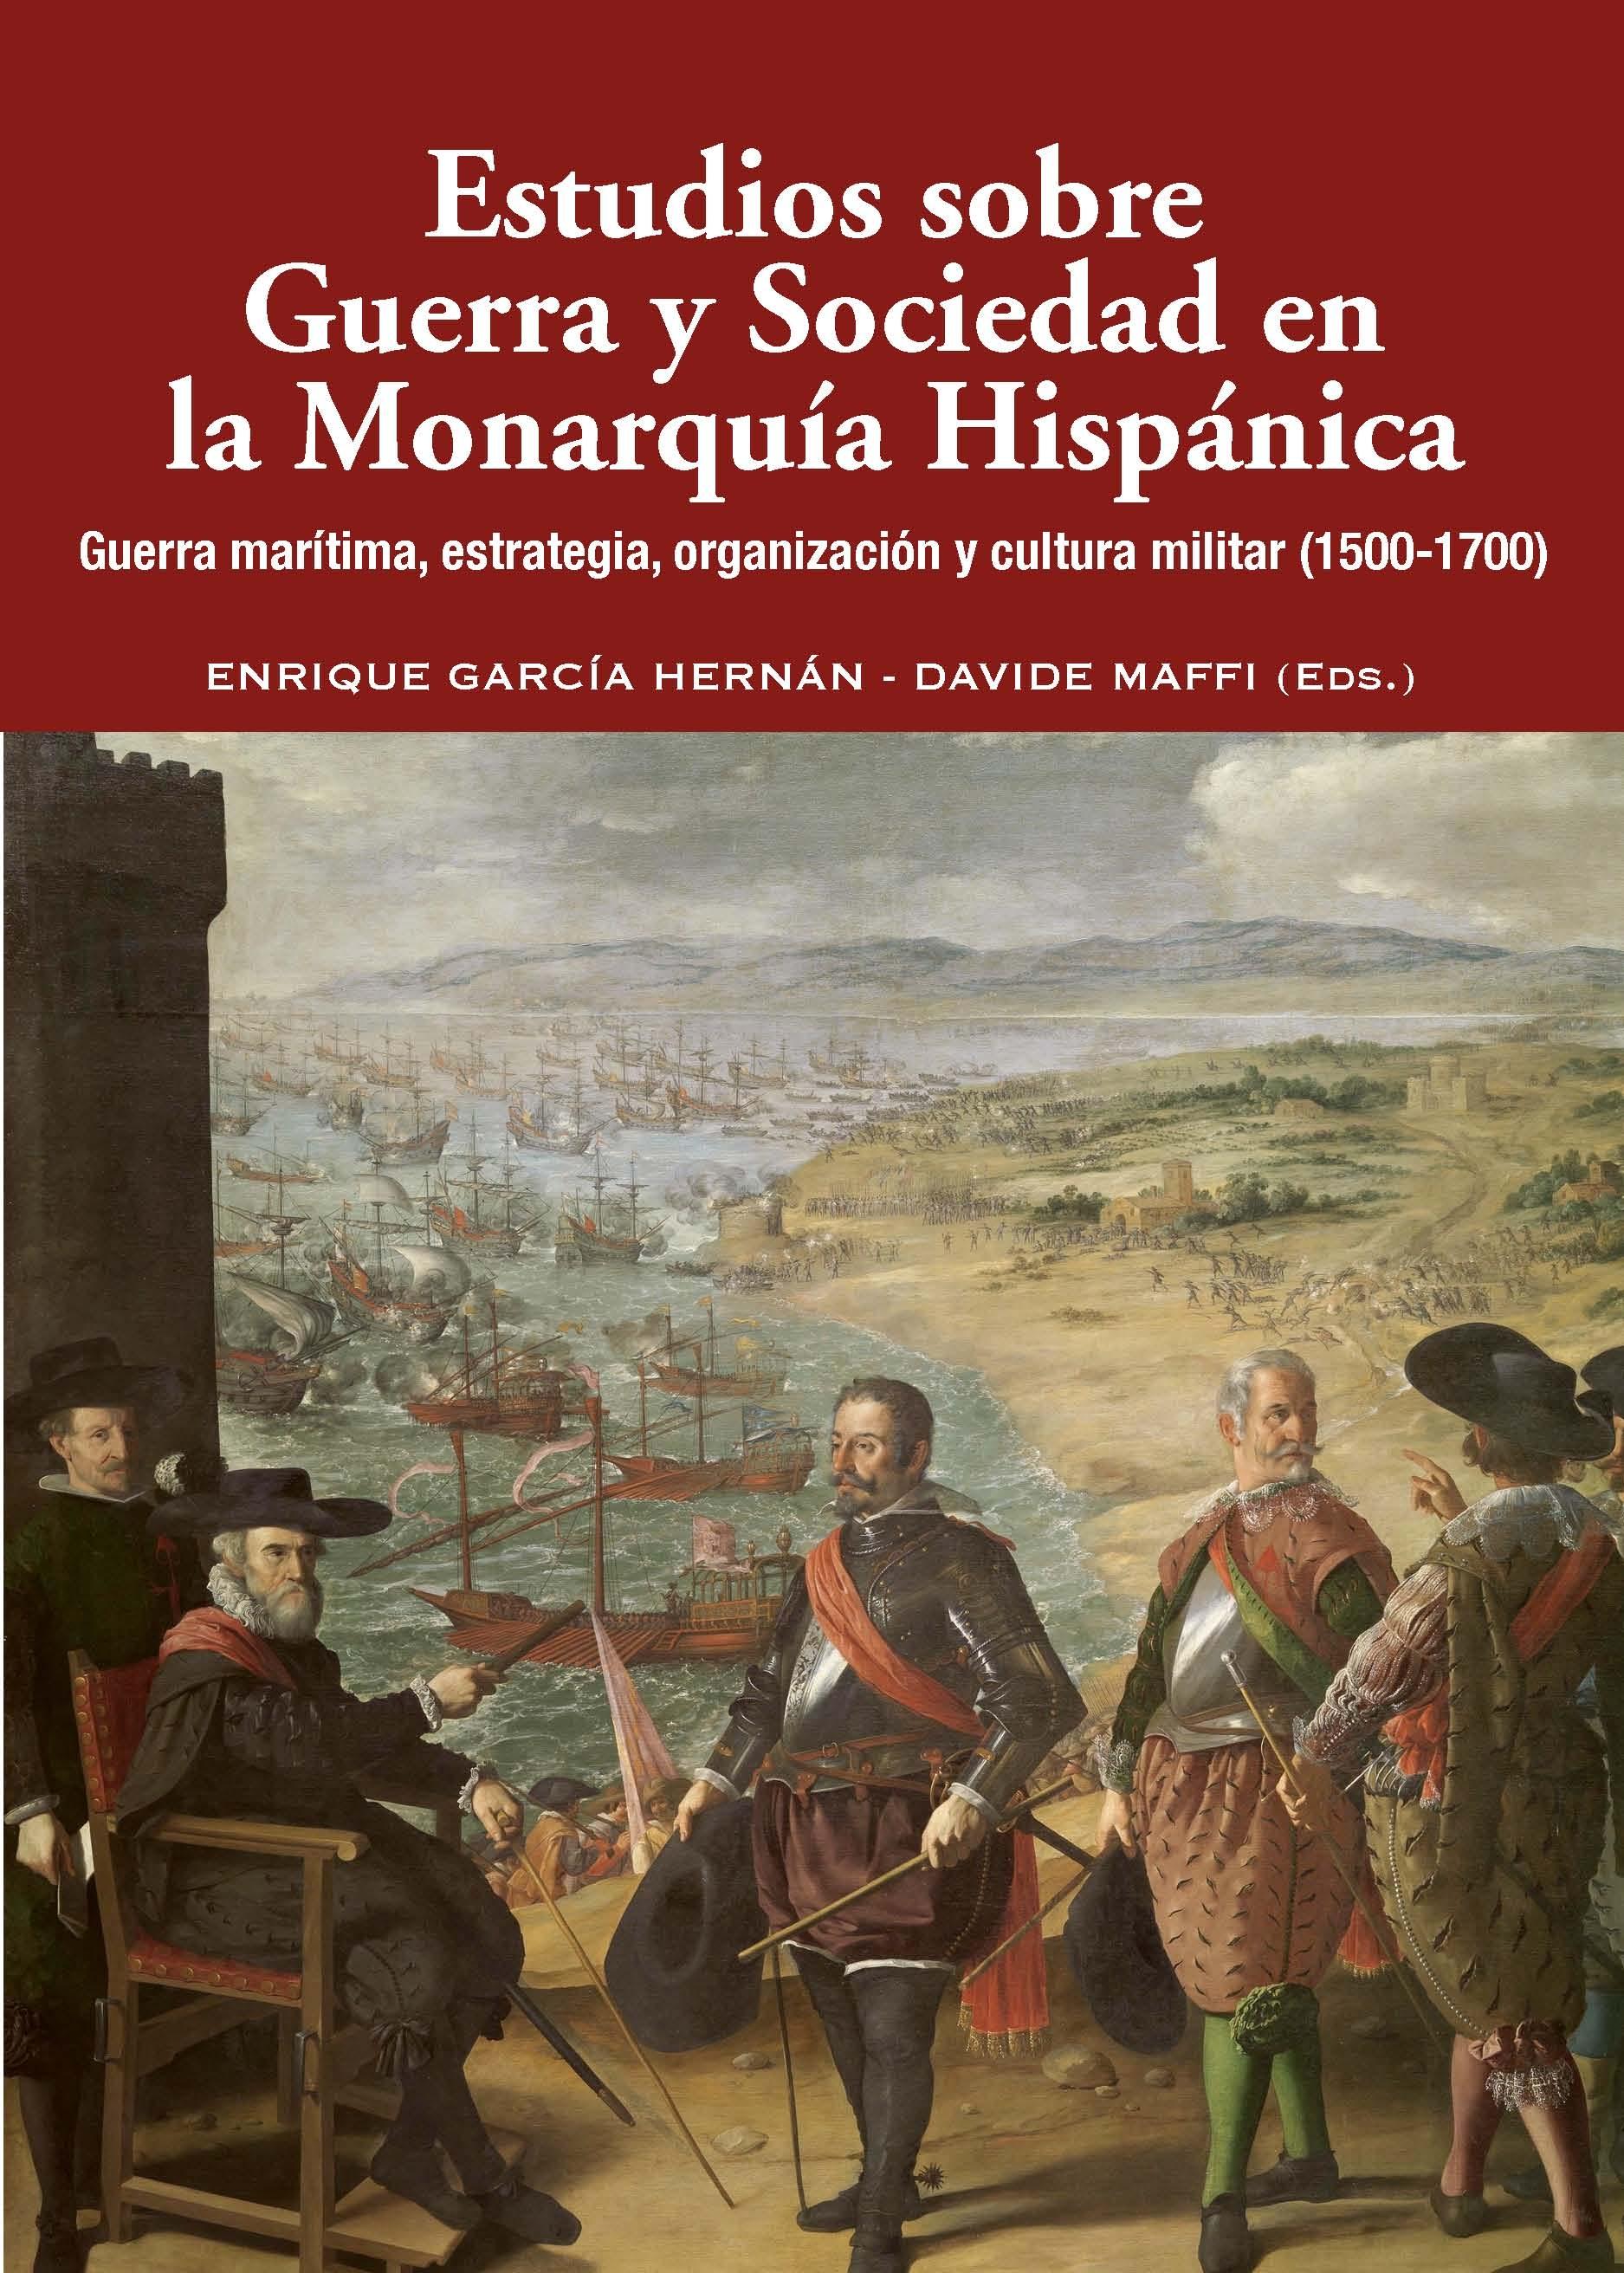 Estudios sobre Guerra y Sociedad en la Monarquía Hispánica "Guerra marítima, estrategia, organización y cultura militar (1500-1700)". 